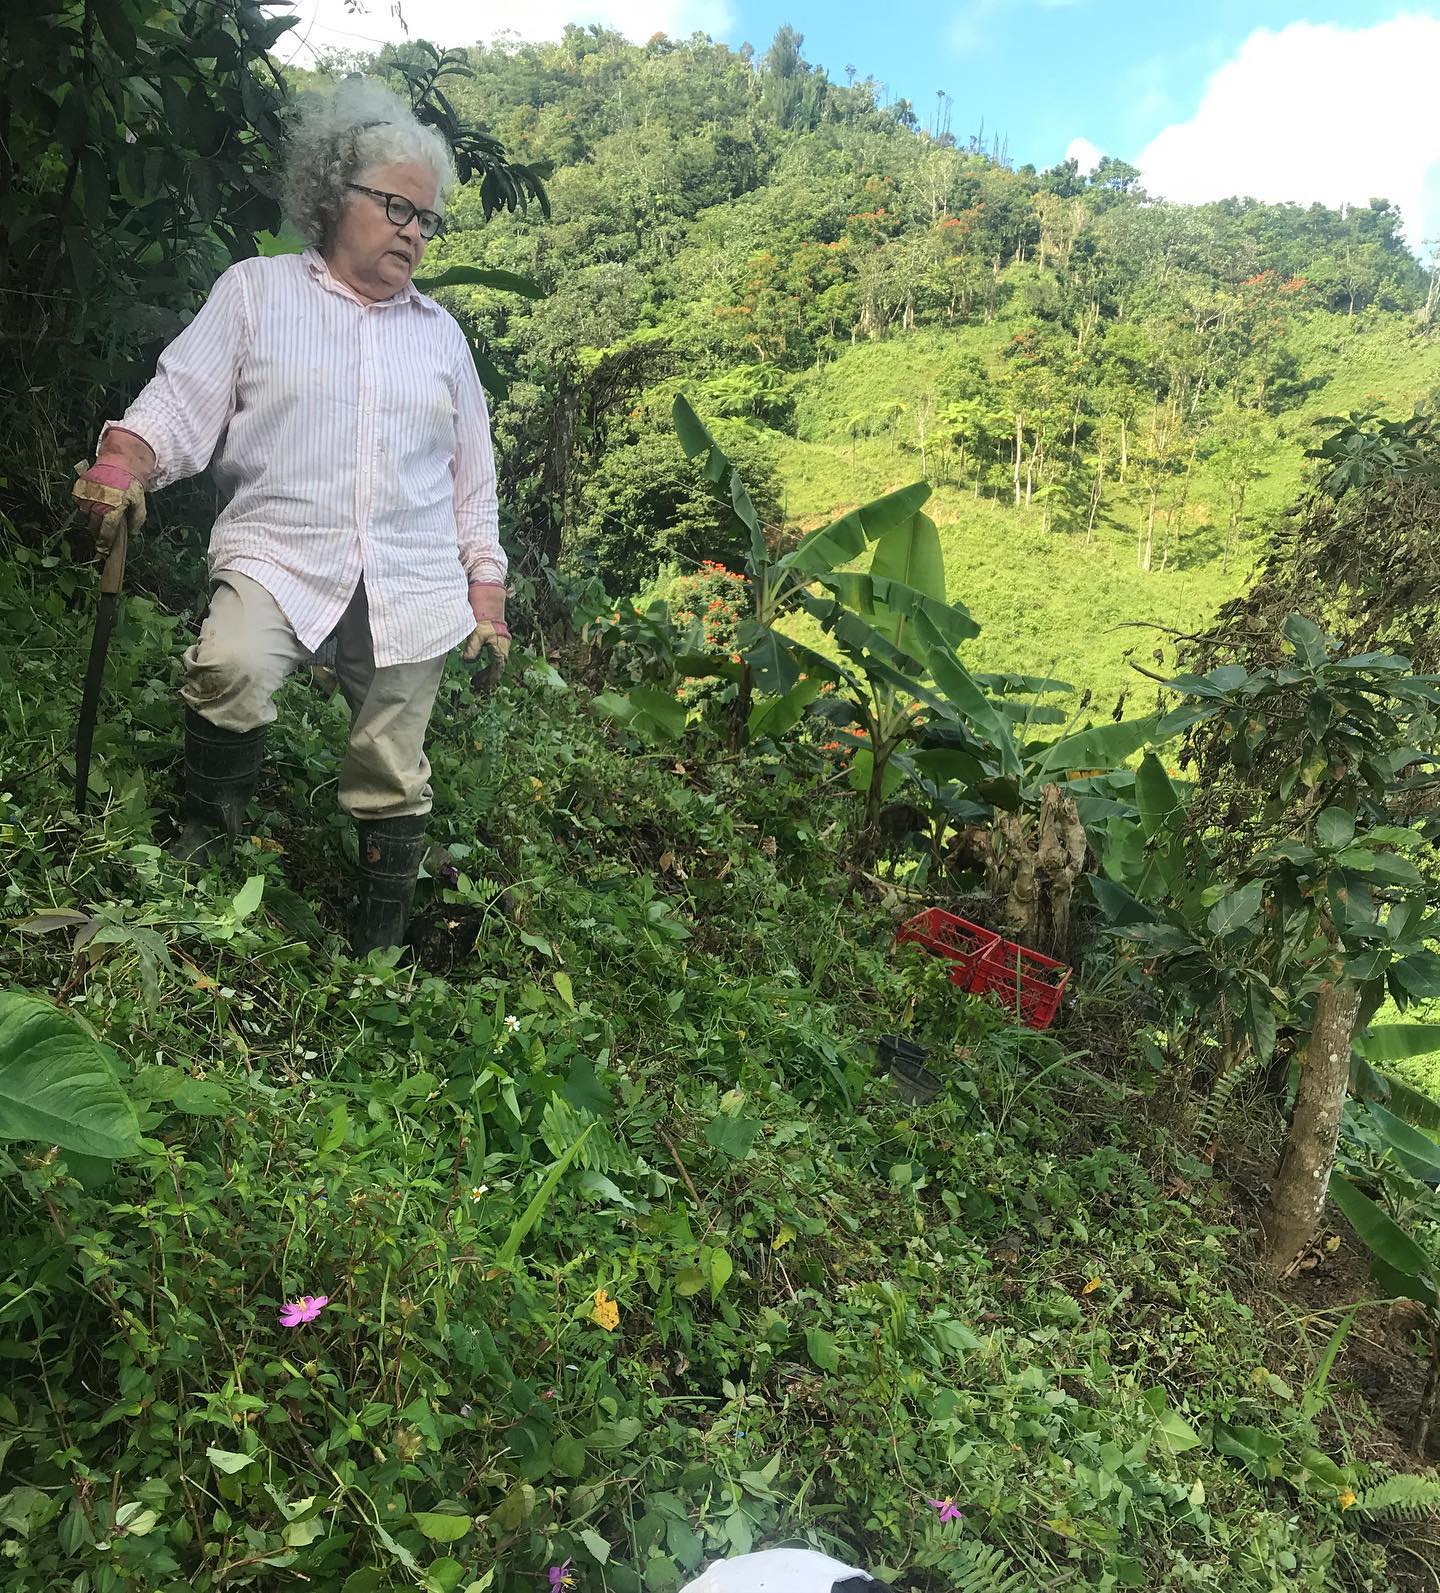 imagen de María García Carrión, vecina y agricultora de San Salvador, Caguas, con machete en mano y ropa de trabajo, parada en una cuesta en su siembra